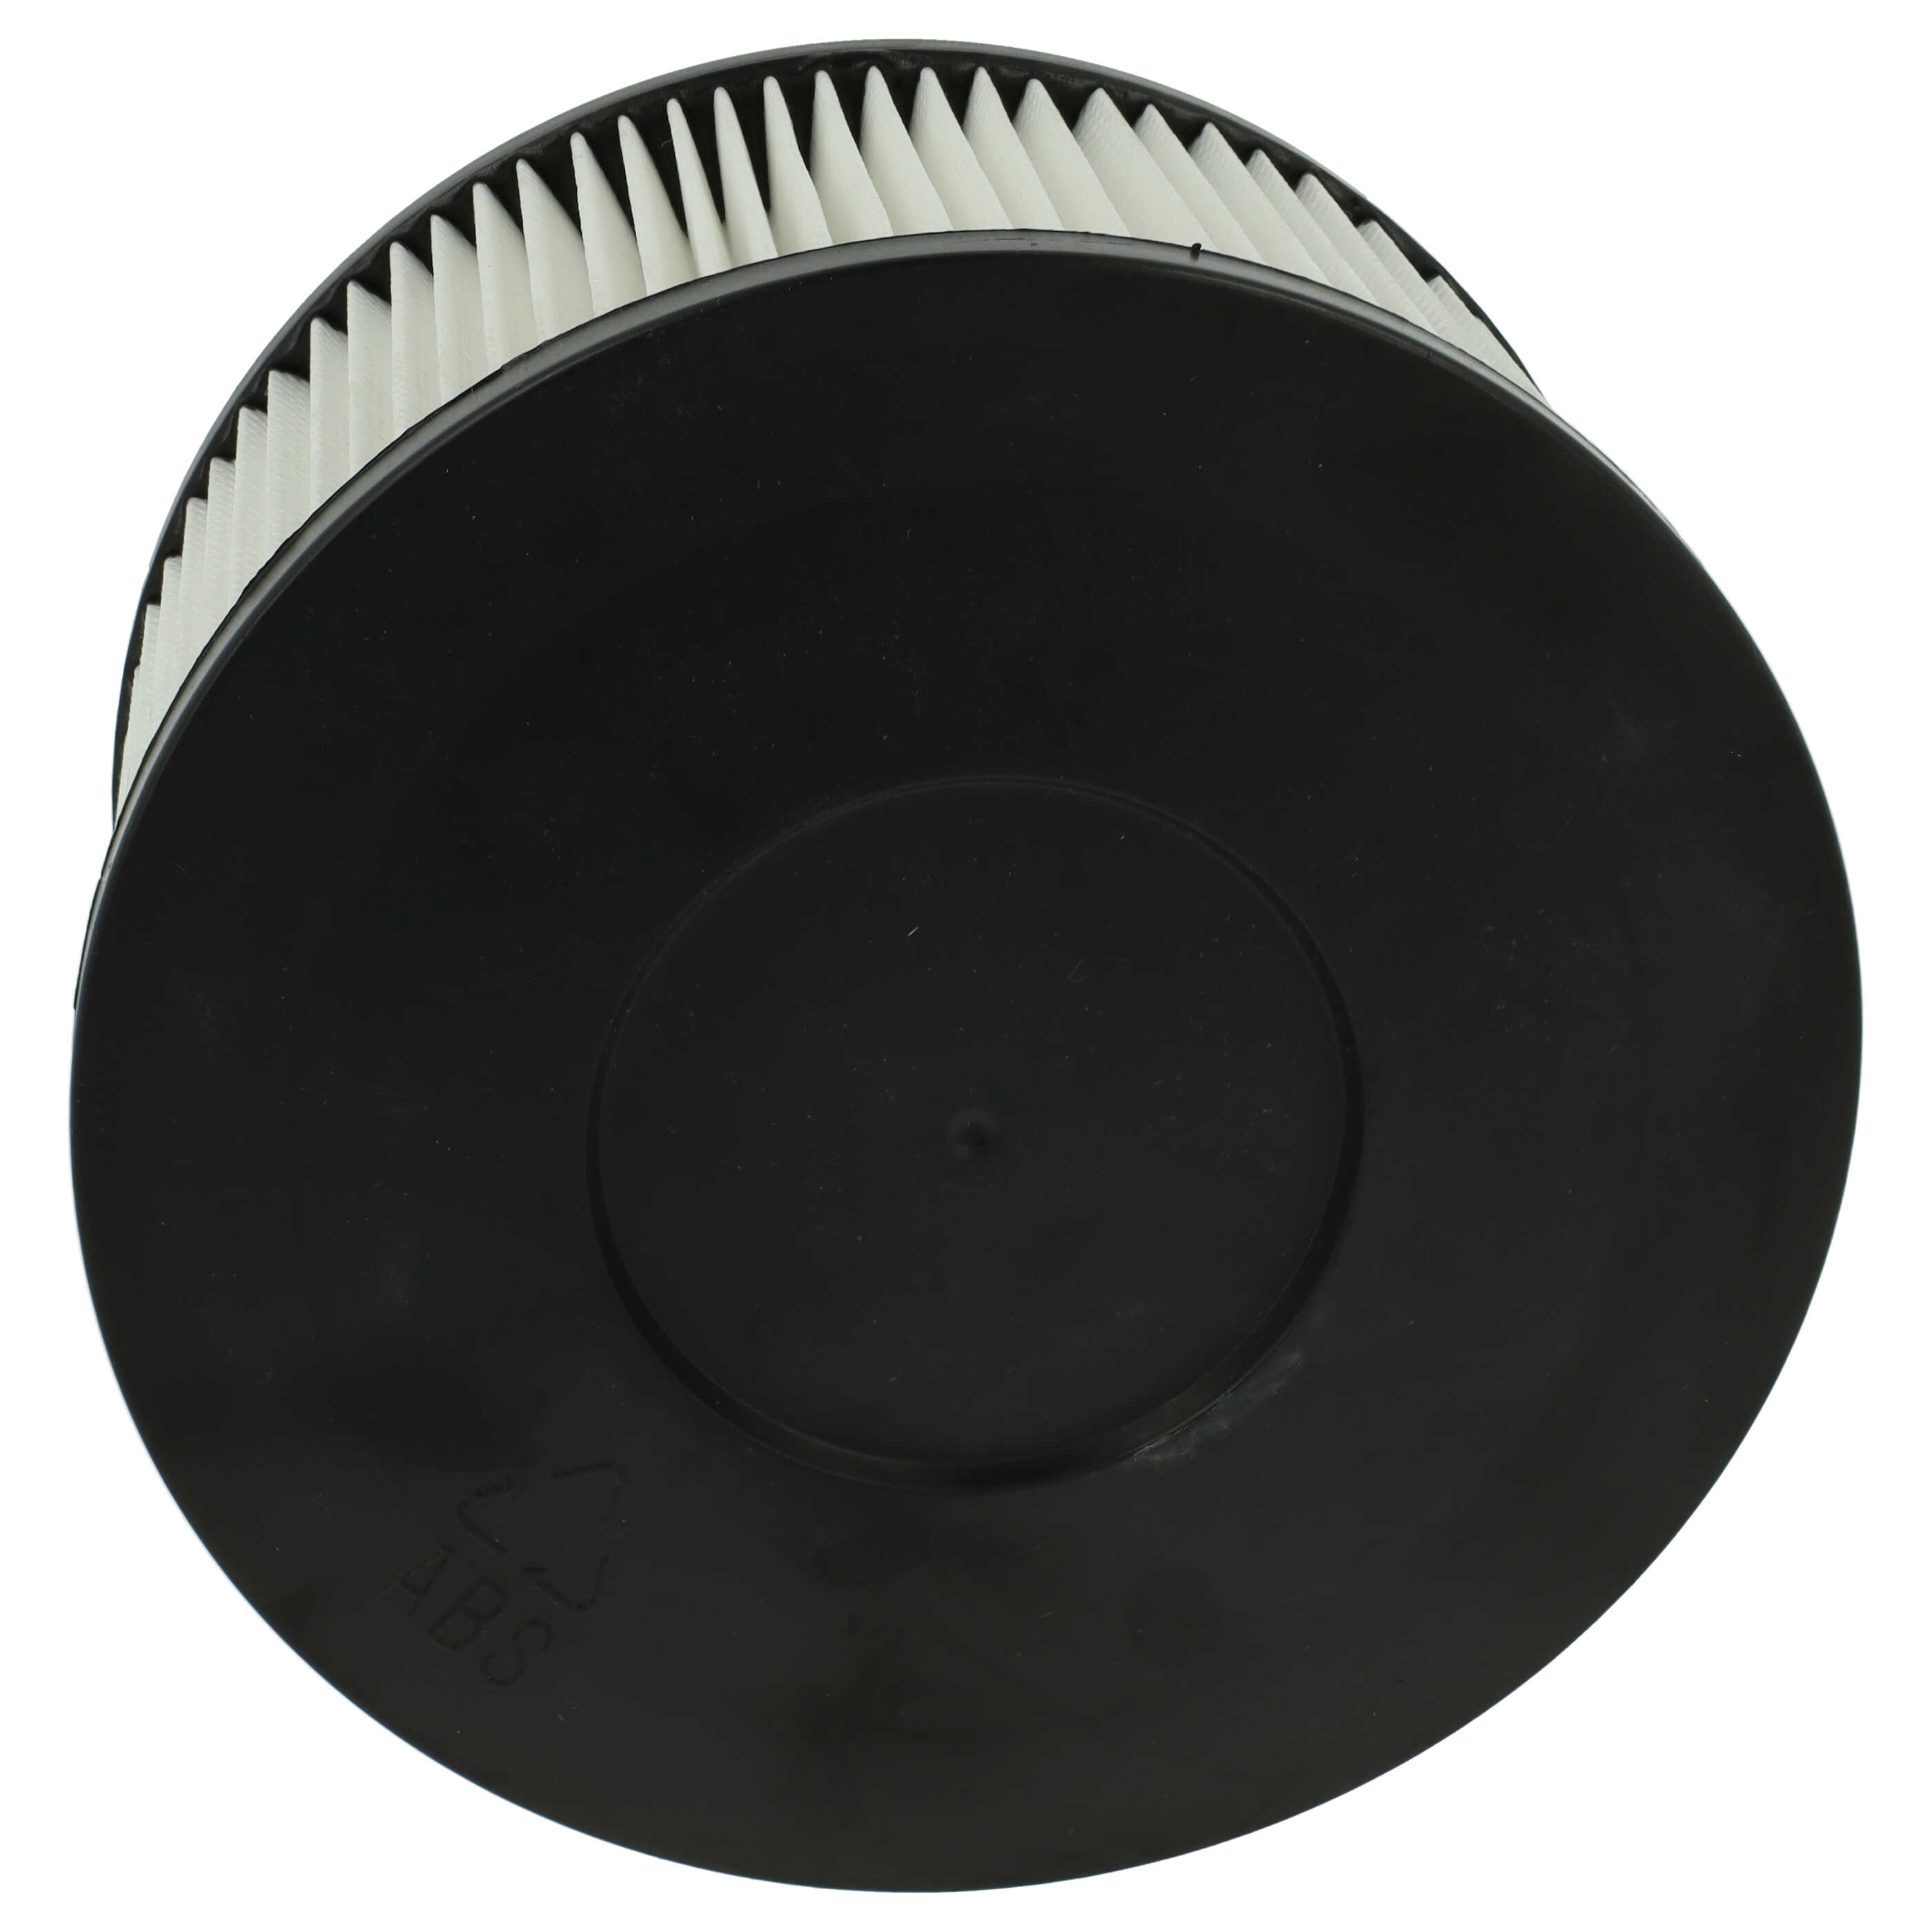 Filtro sostituisce Oxeo 760023 per aspiracenere - filtro HEPA, nero / bianco